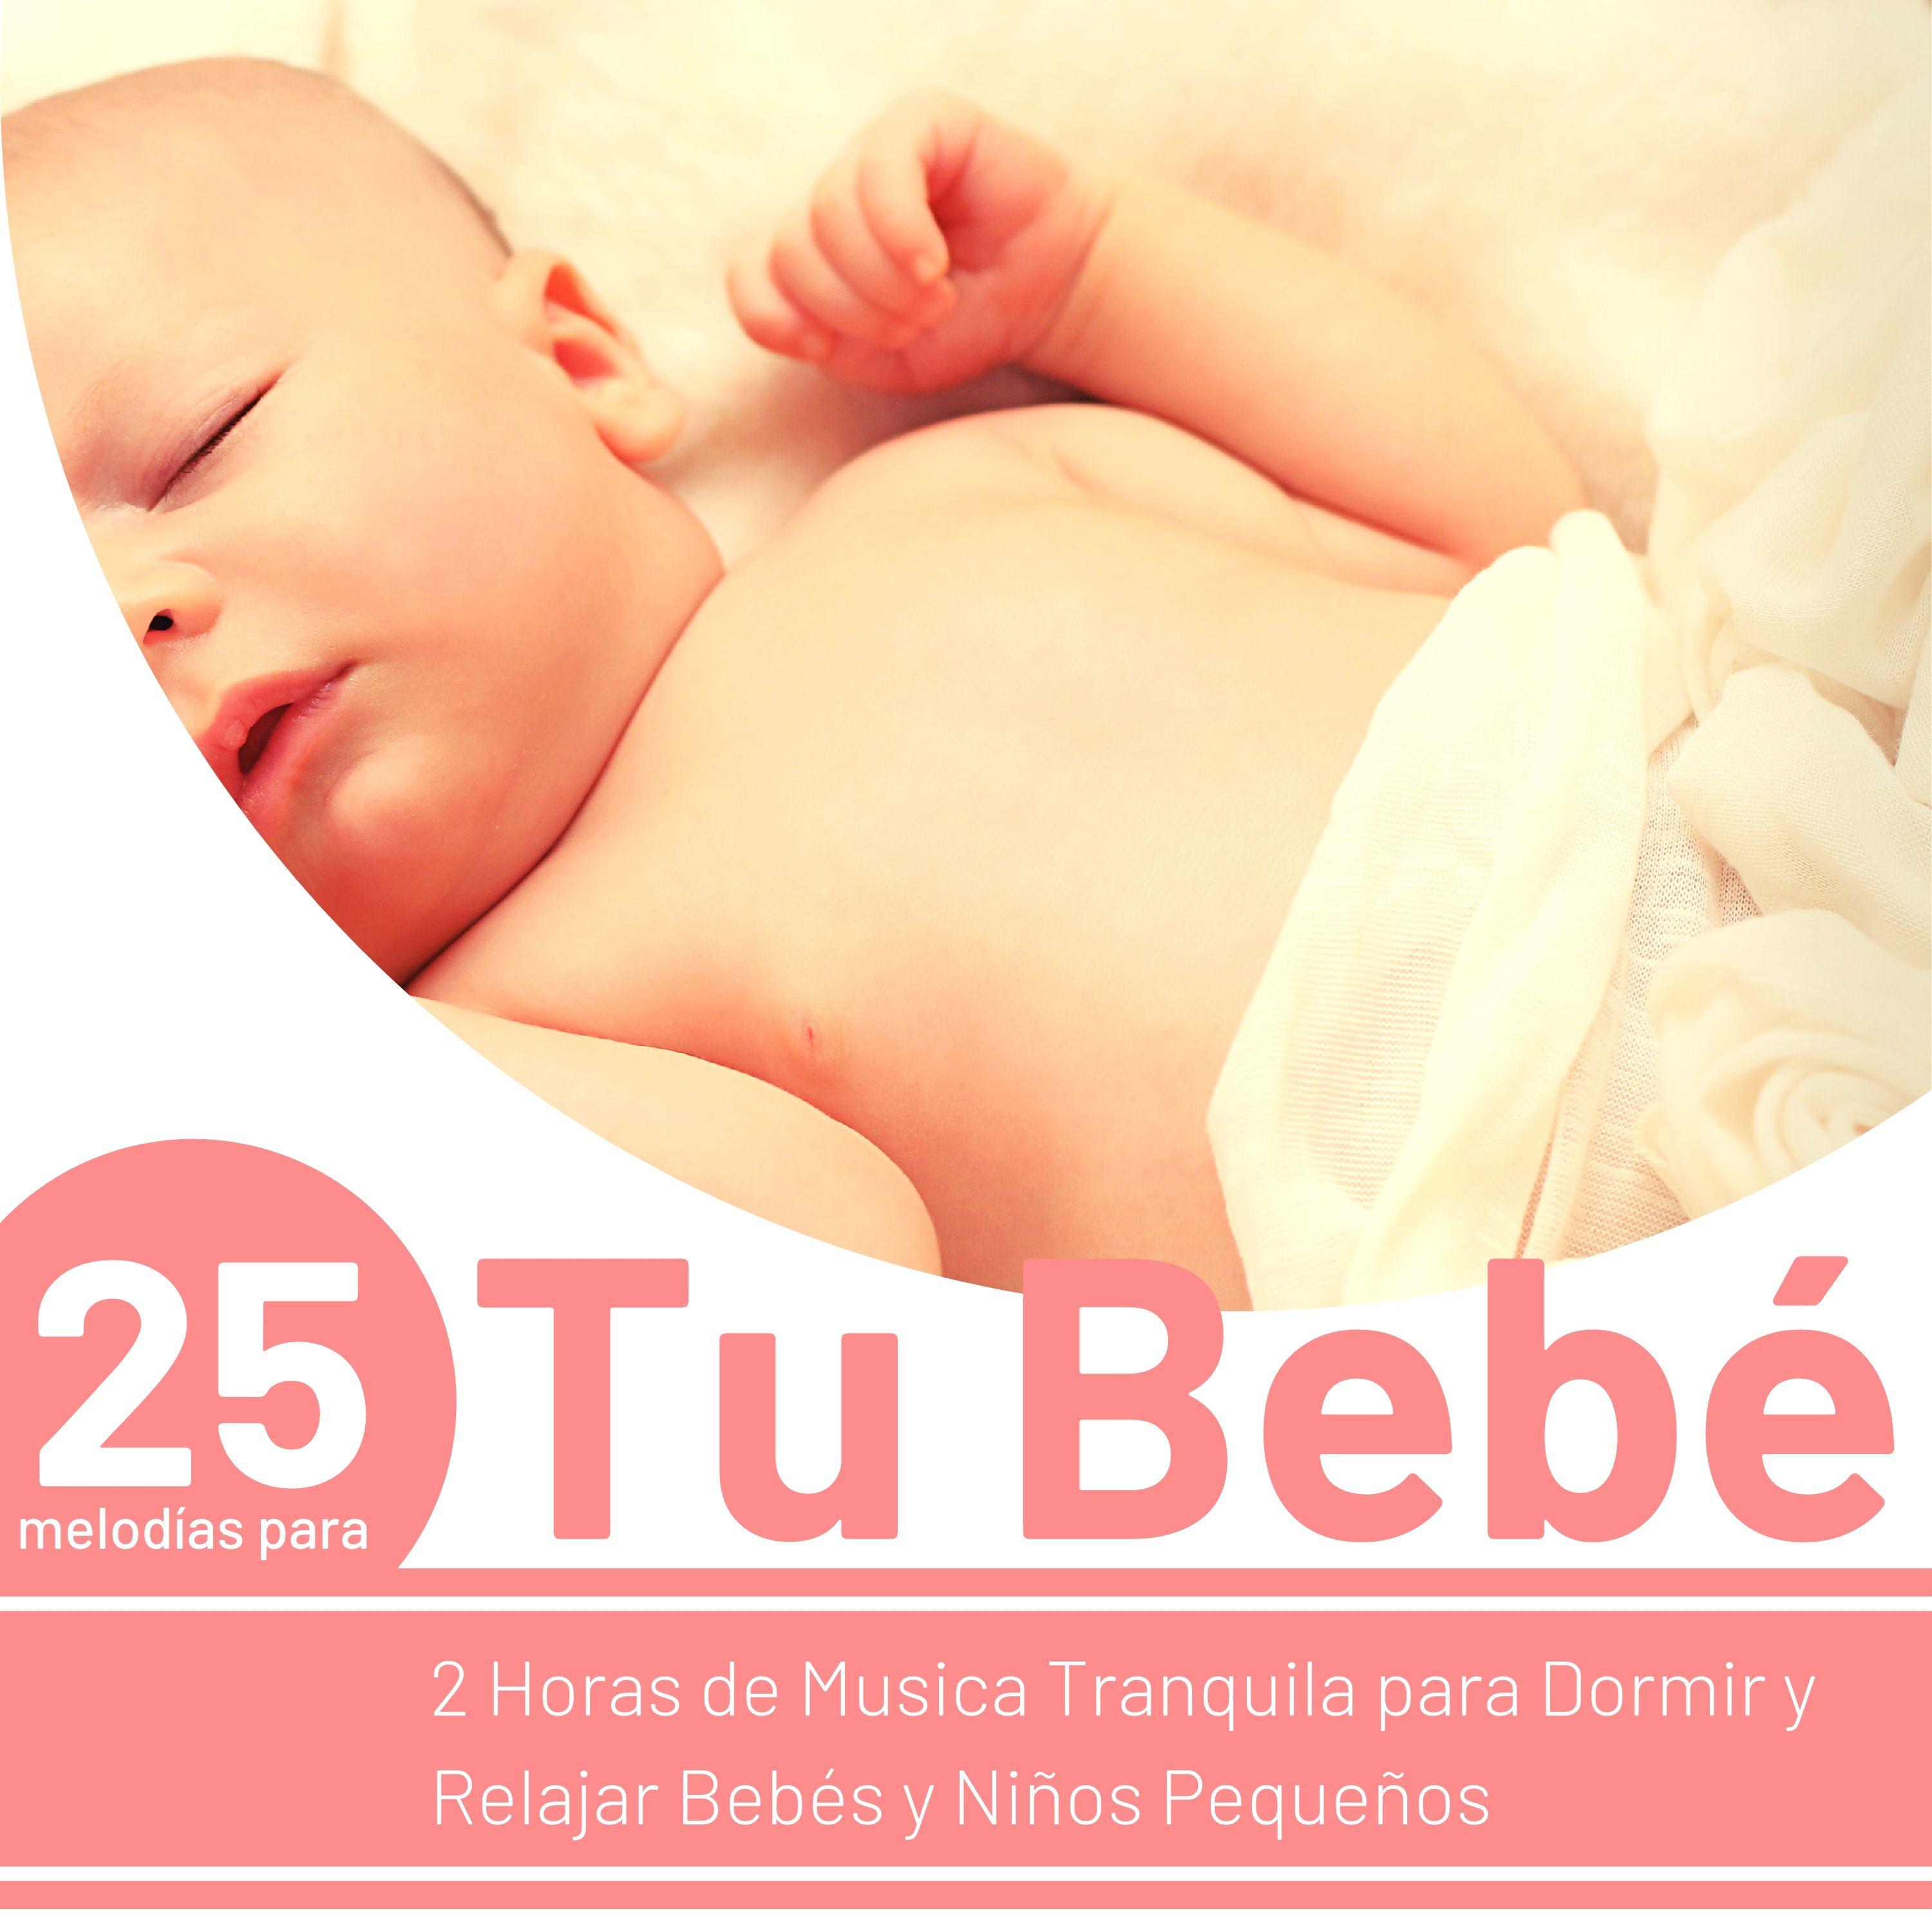 25 Melodi as para Tu Bebe  2 Horas de Musica Tranquila para Dormir y Relajar Bebe s y Ni os Peque os